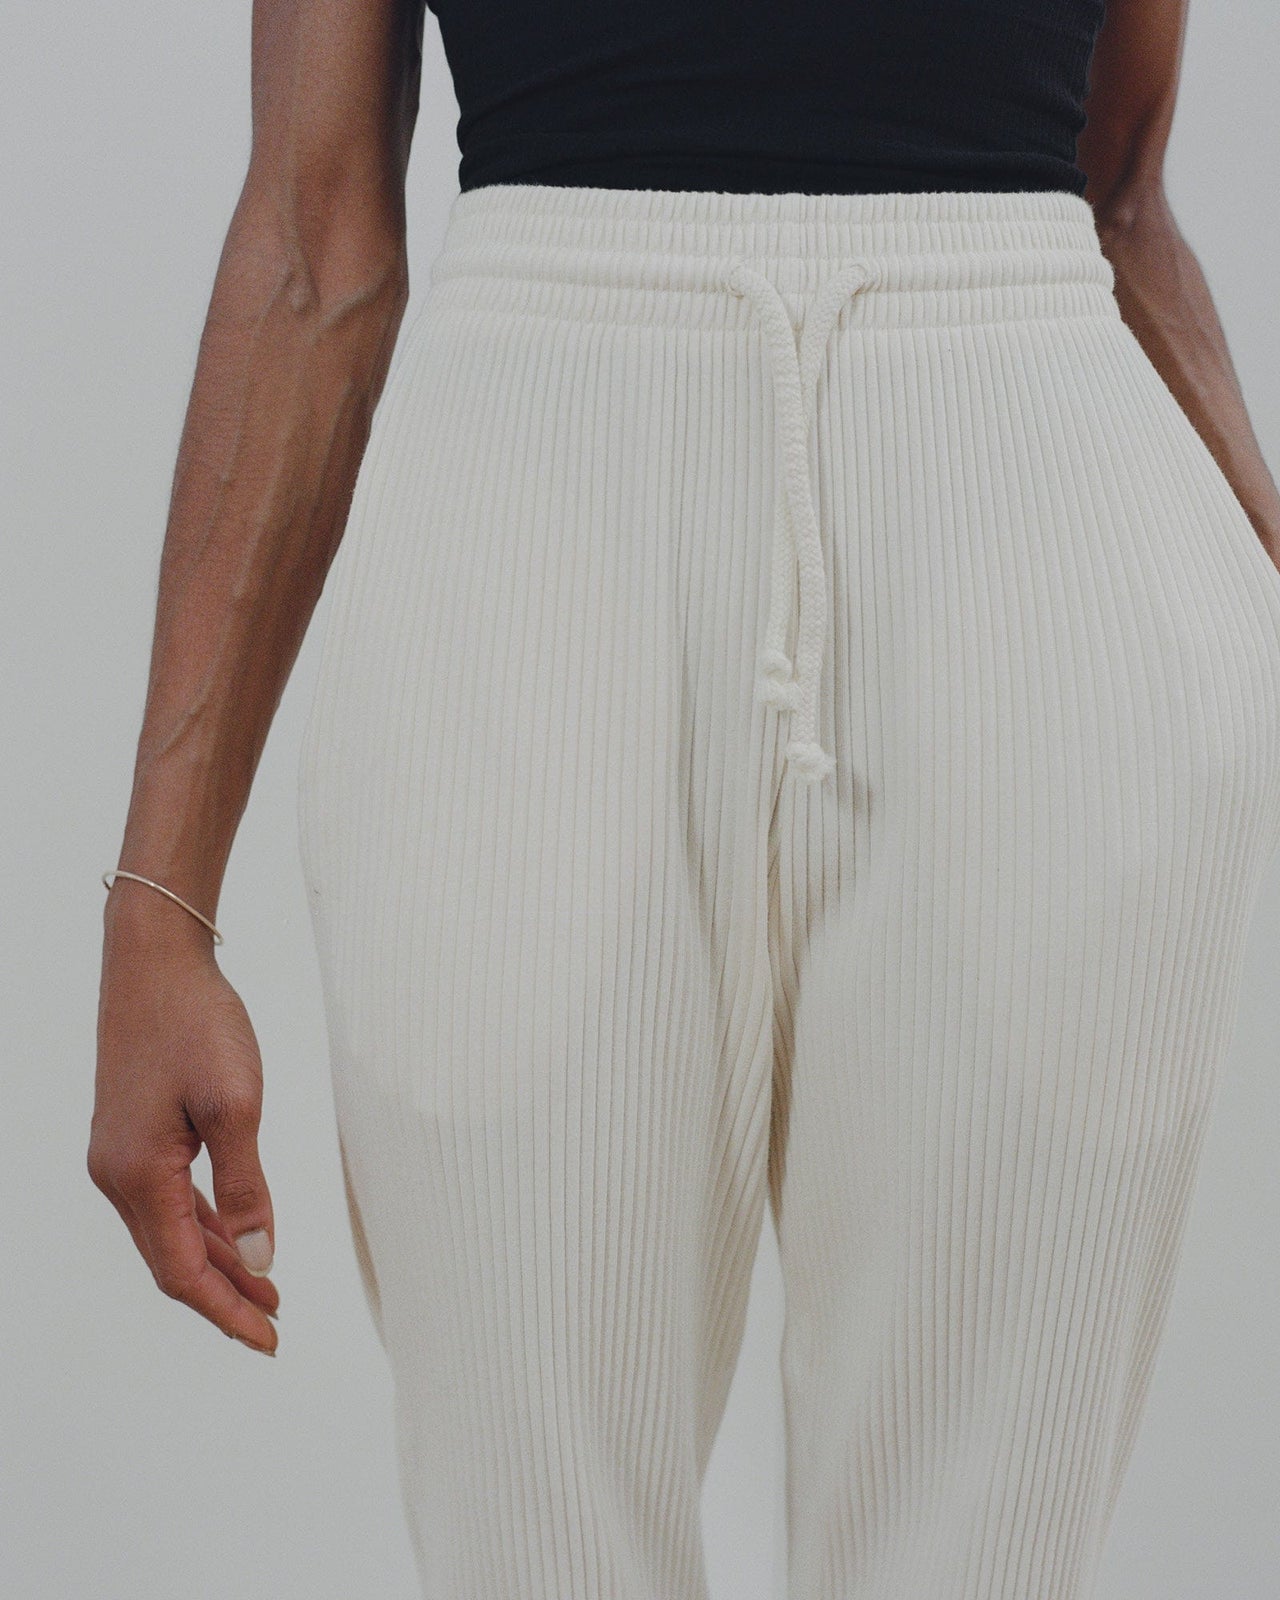 BASERANGE リブスウェットパンツ sweat pants XS ホワイト - パンツ